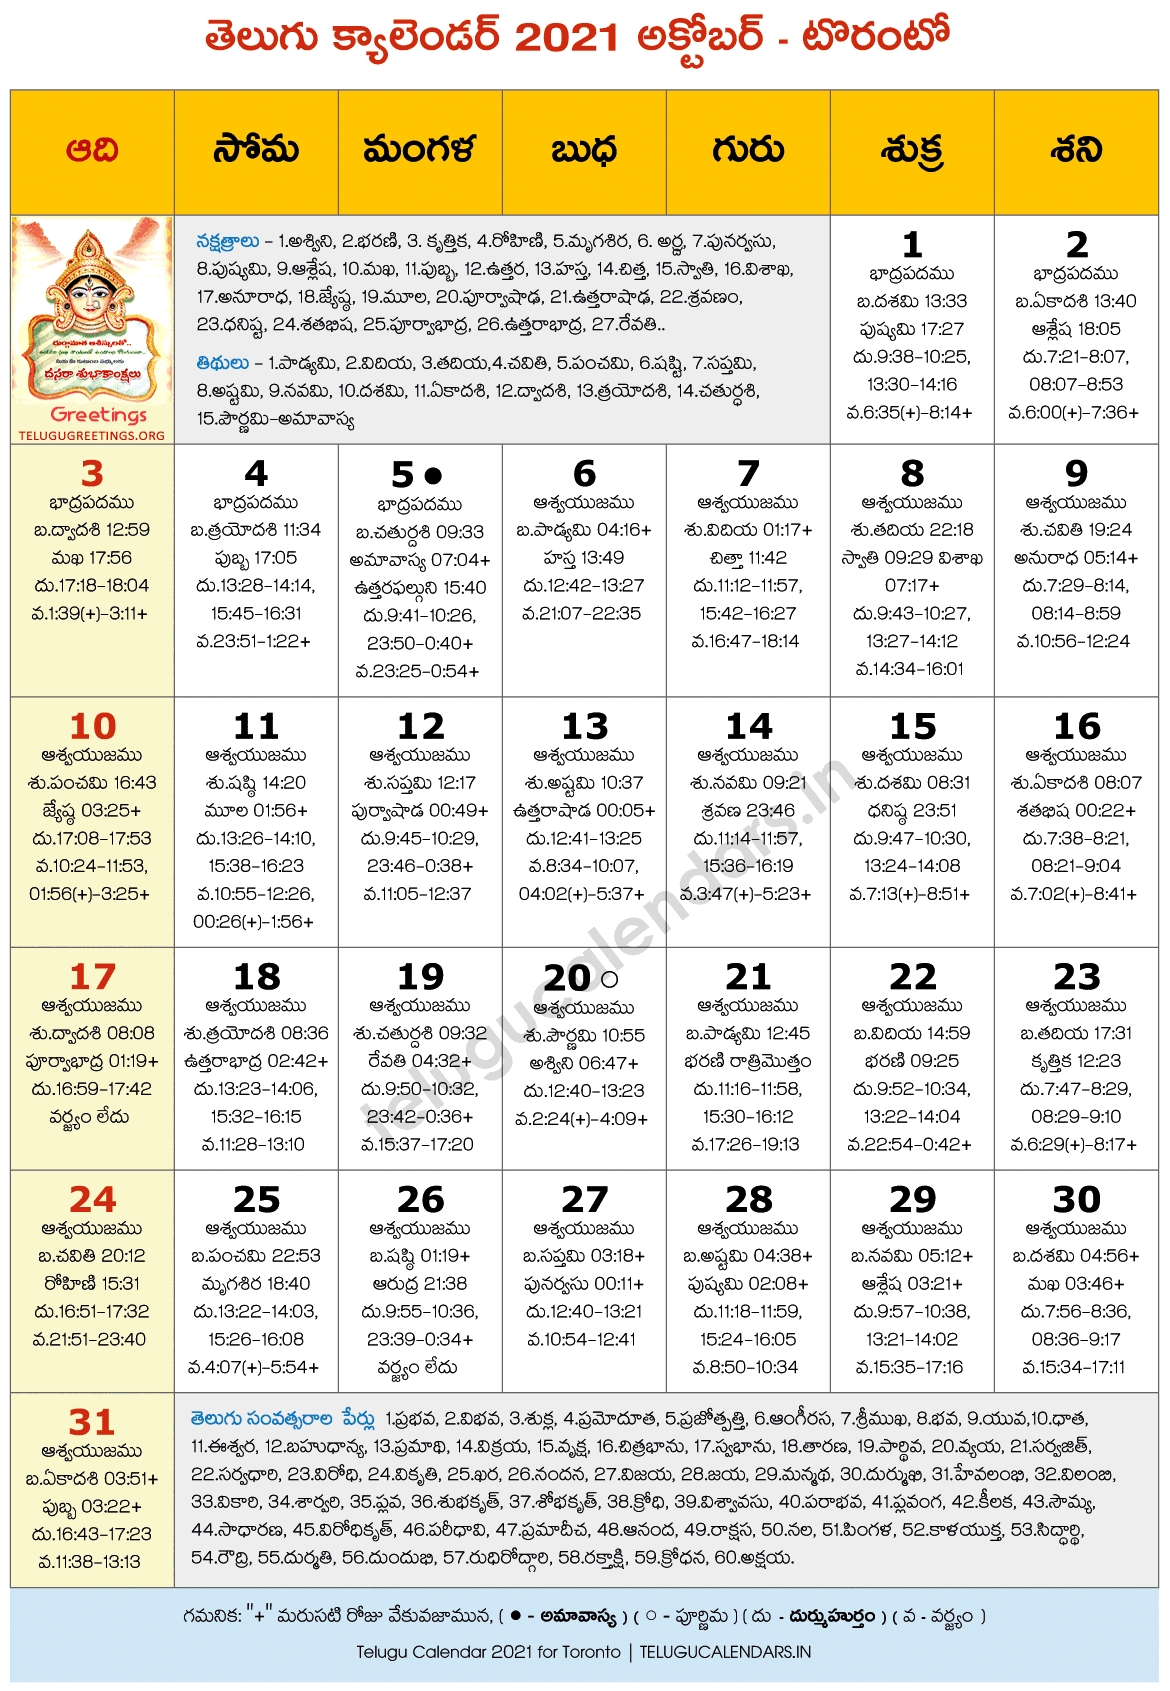 Toronto 2021 October Telugu Calendar | Telugu Calendars Telugu Calendar 2021 November Andhra Pradesh